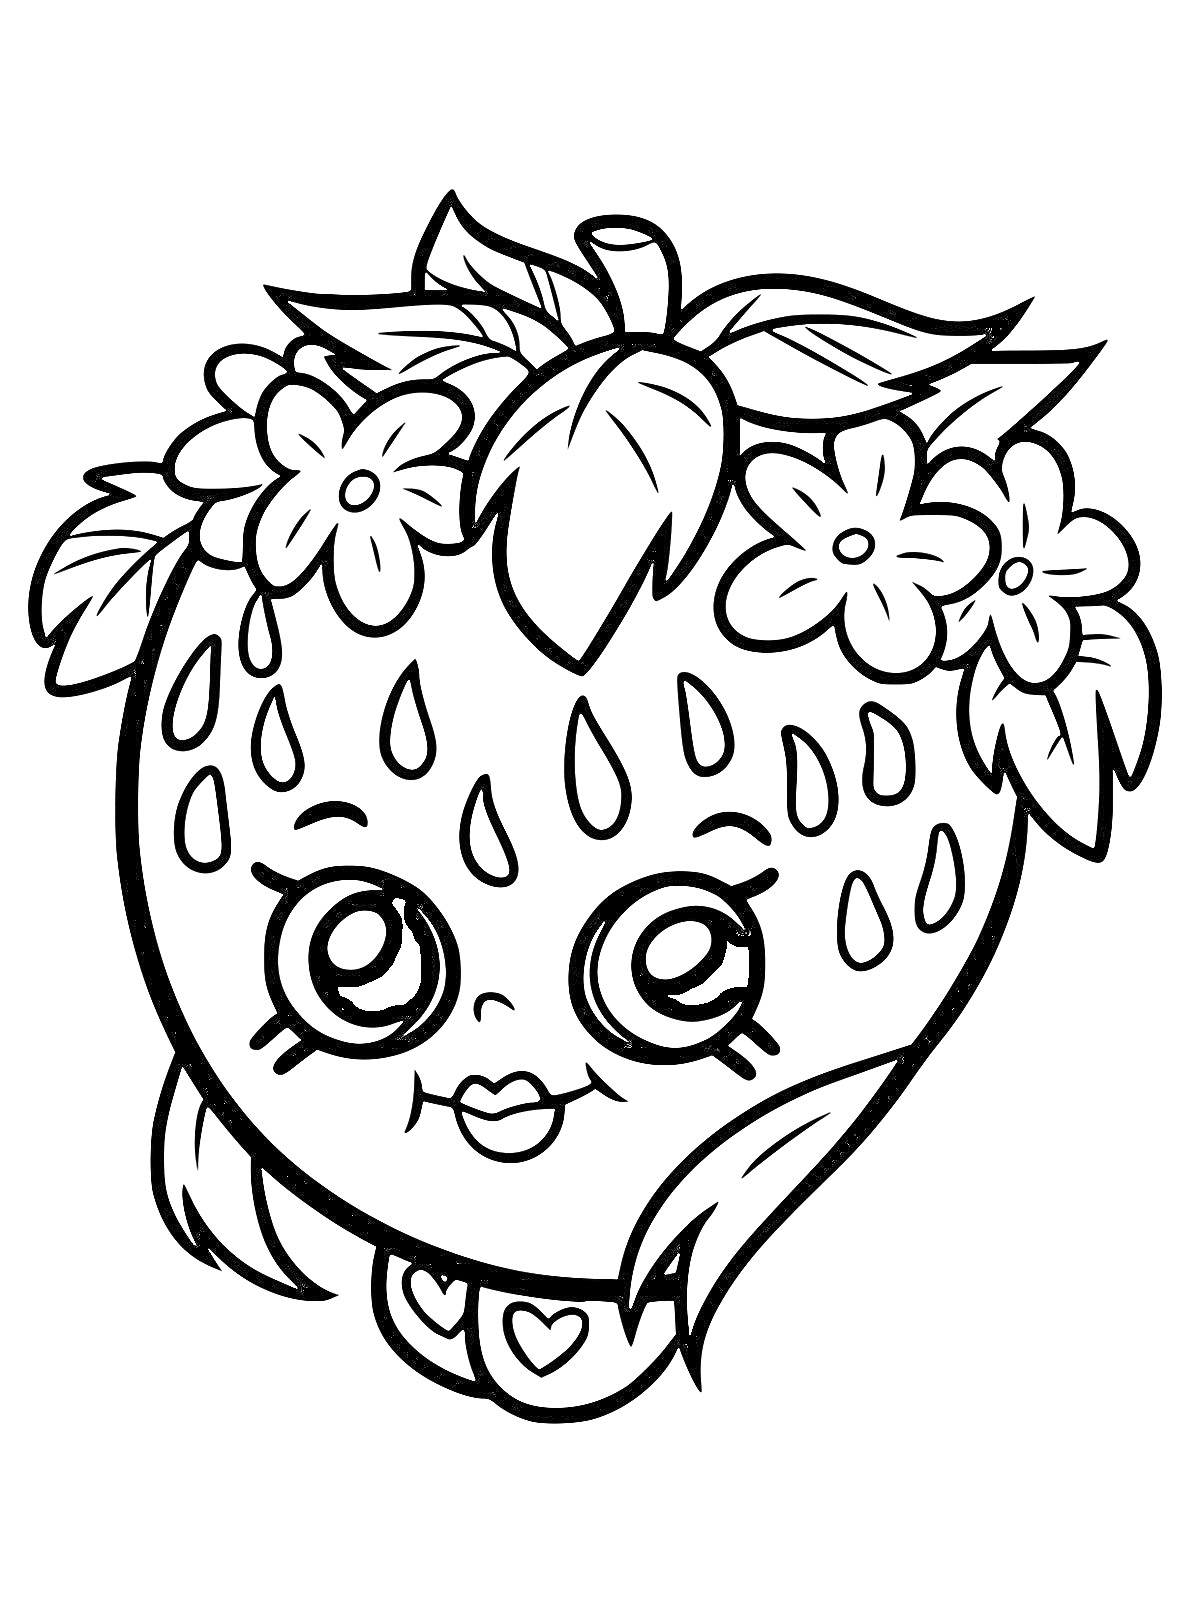 Раскраска Клубника Шопкинс с цветами и сердечком на шее